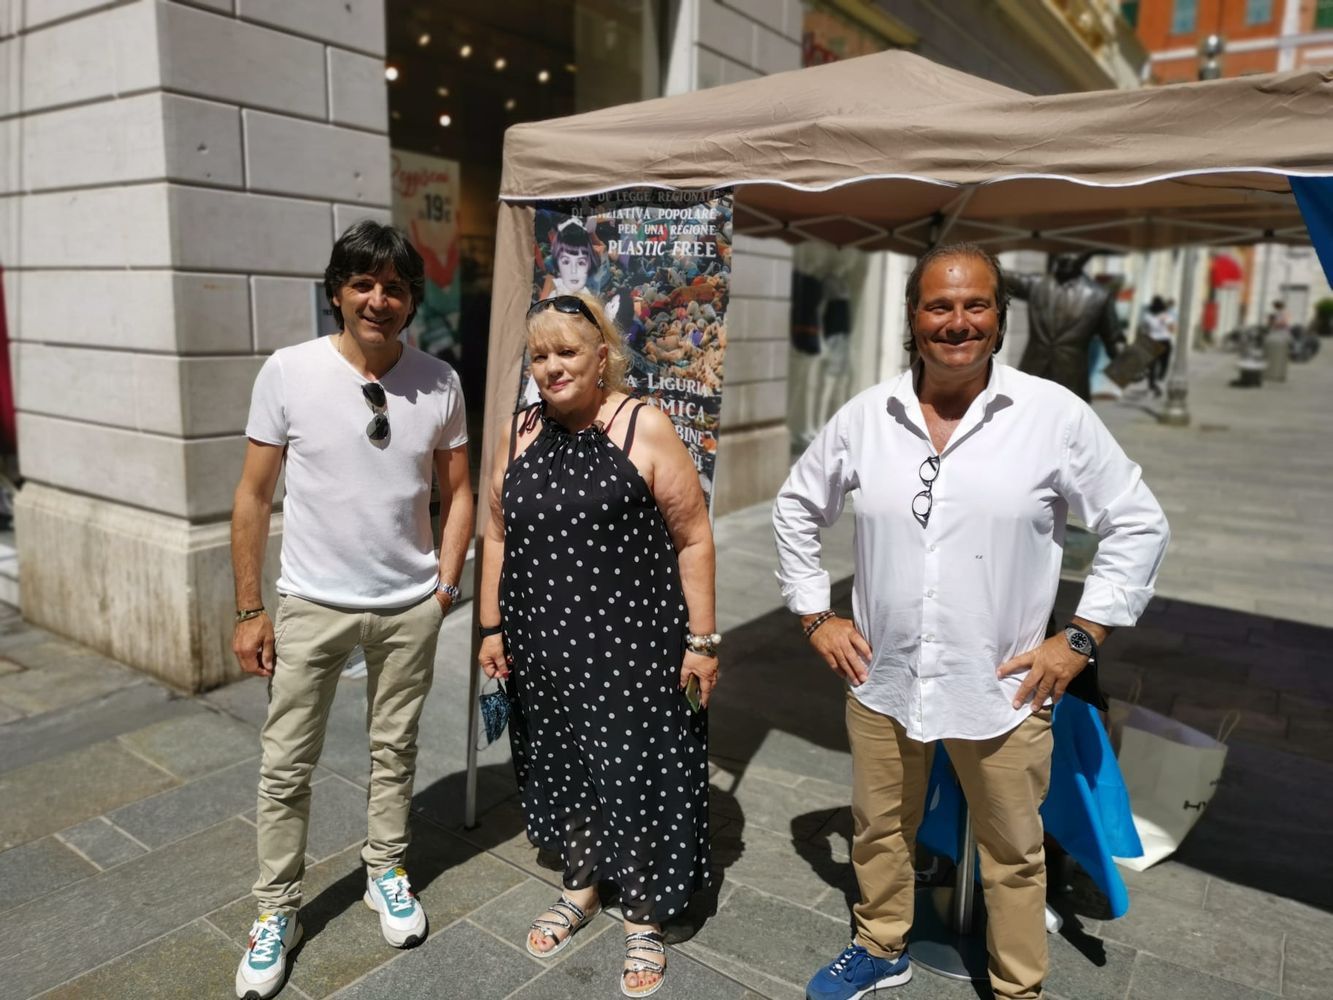 Luca Lombardi e Antonino Consiglio Iniziativa plastica free Unicef Colomba Tirari firma sindaci